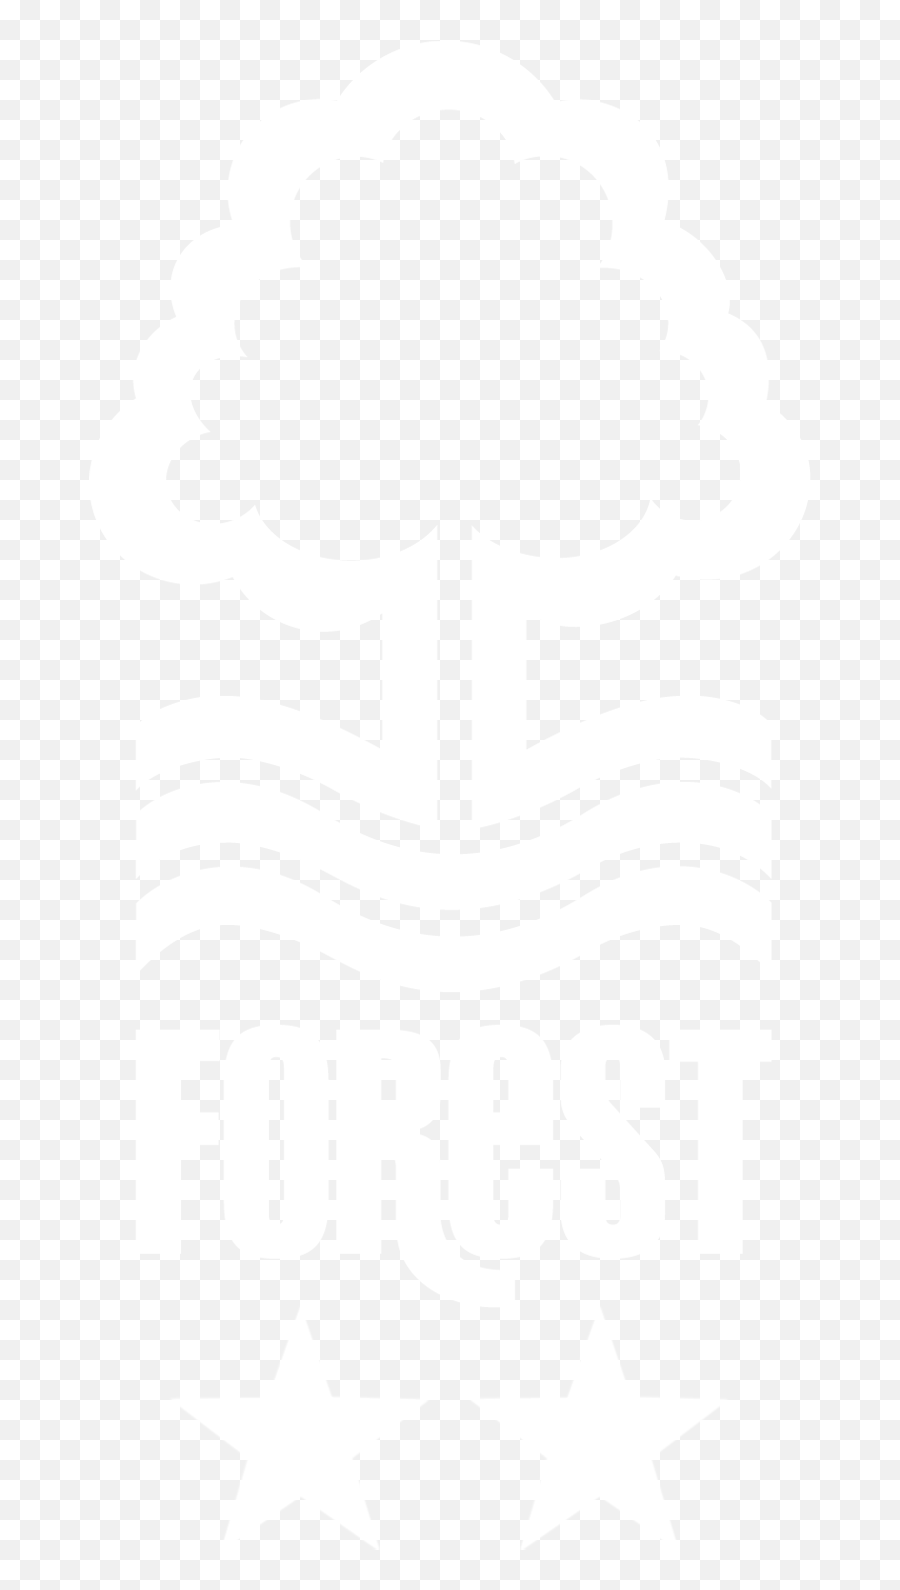 Tf2 Logo - Nottingham Forest Mask Emoji,Tf2 Logo